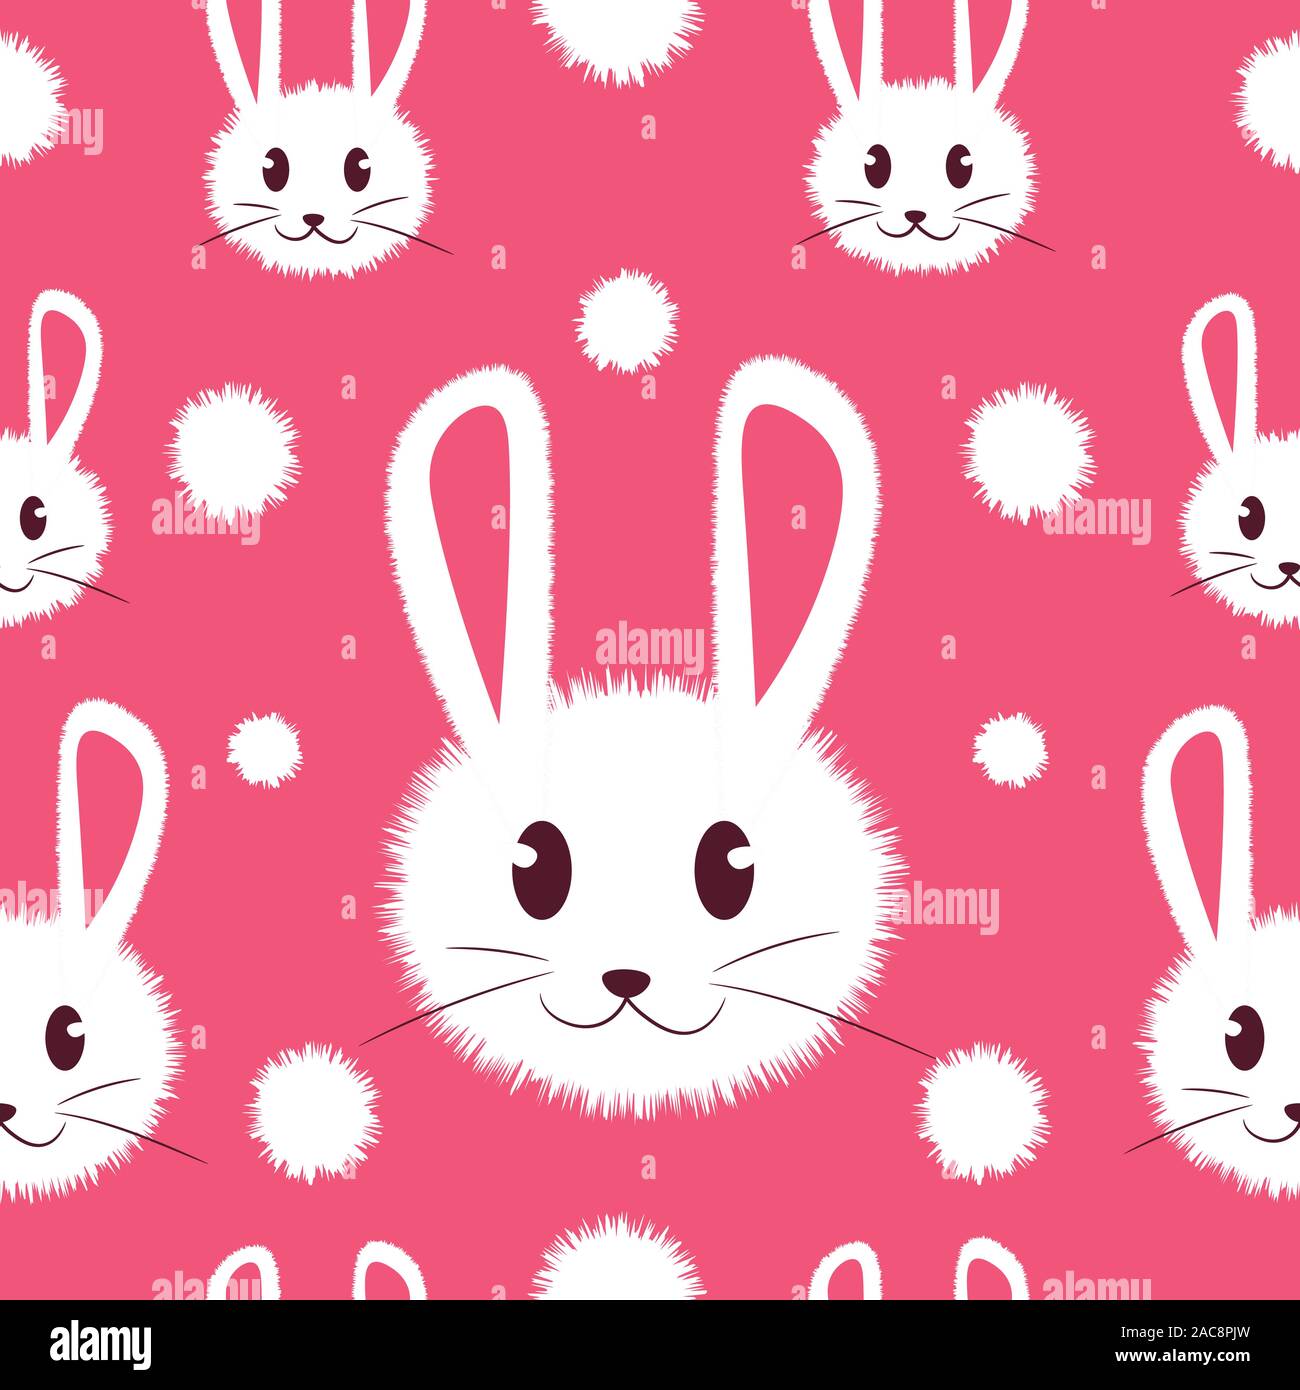 Weiß und niedliche pelzige Bunny nahtlose Muster für Kinder. Kawaii Kaninchen auf einem girly Baby Hintergrund für Drucke, Kleidung und Texturen Vektor. Stock Vektor